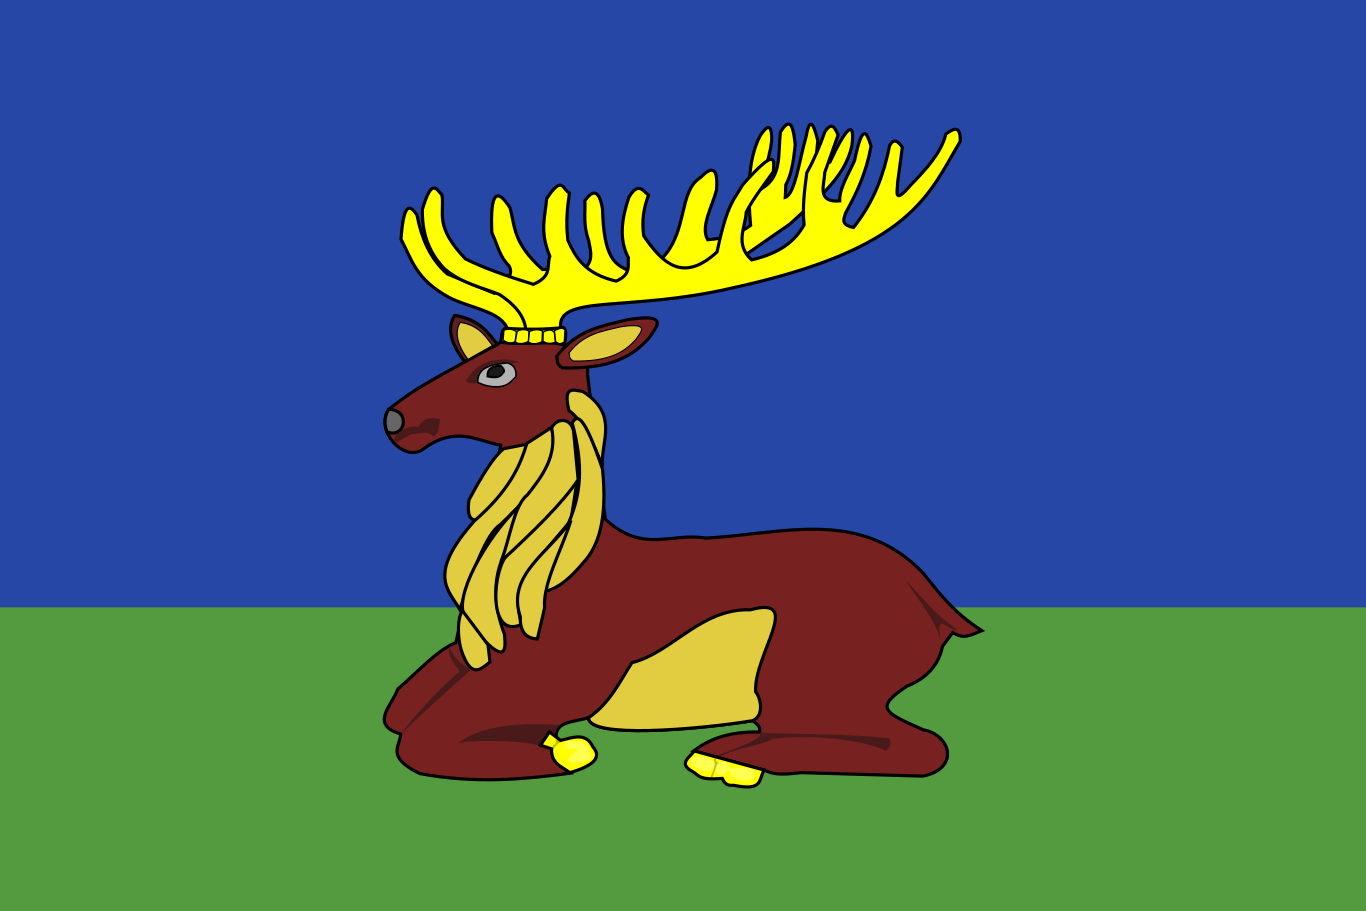 Obrázek vlajky města Jaroměřice Nad Rokytnou v rozlišení 1366x911 Kraj Vysočina Jaroměřická vlajka 